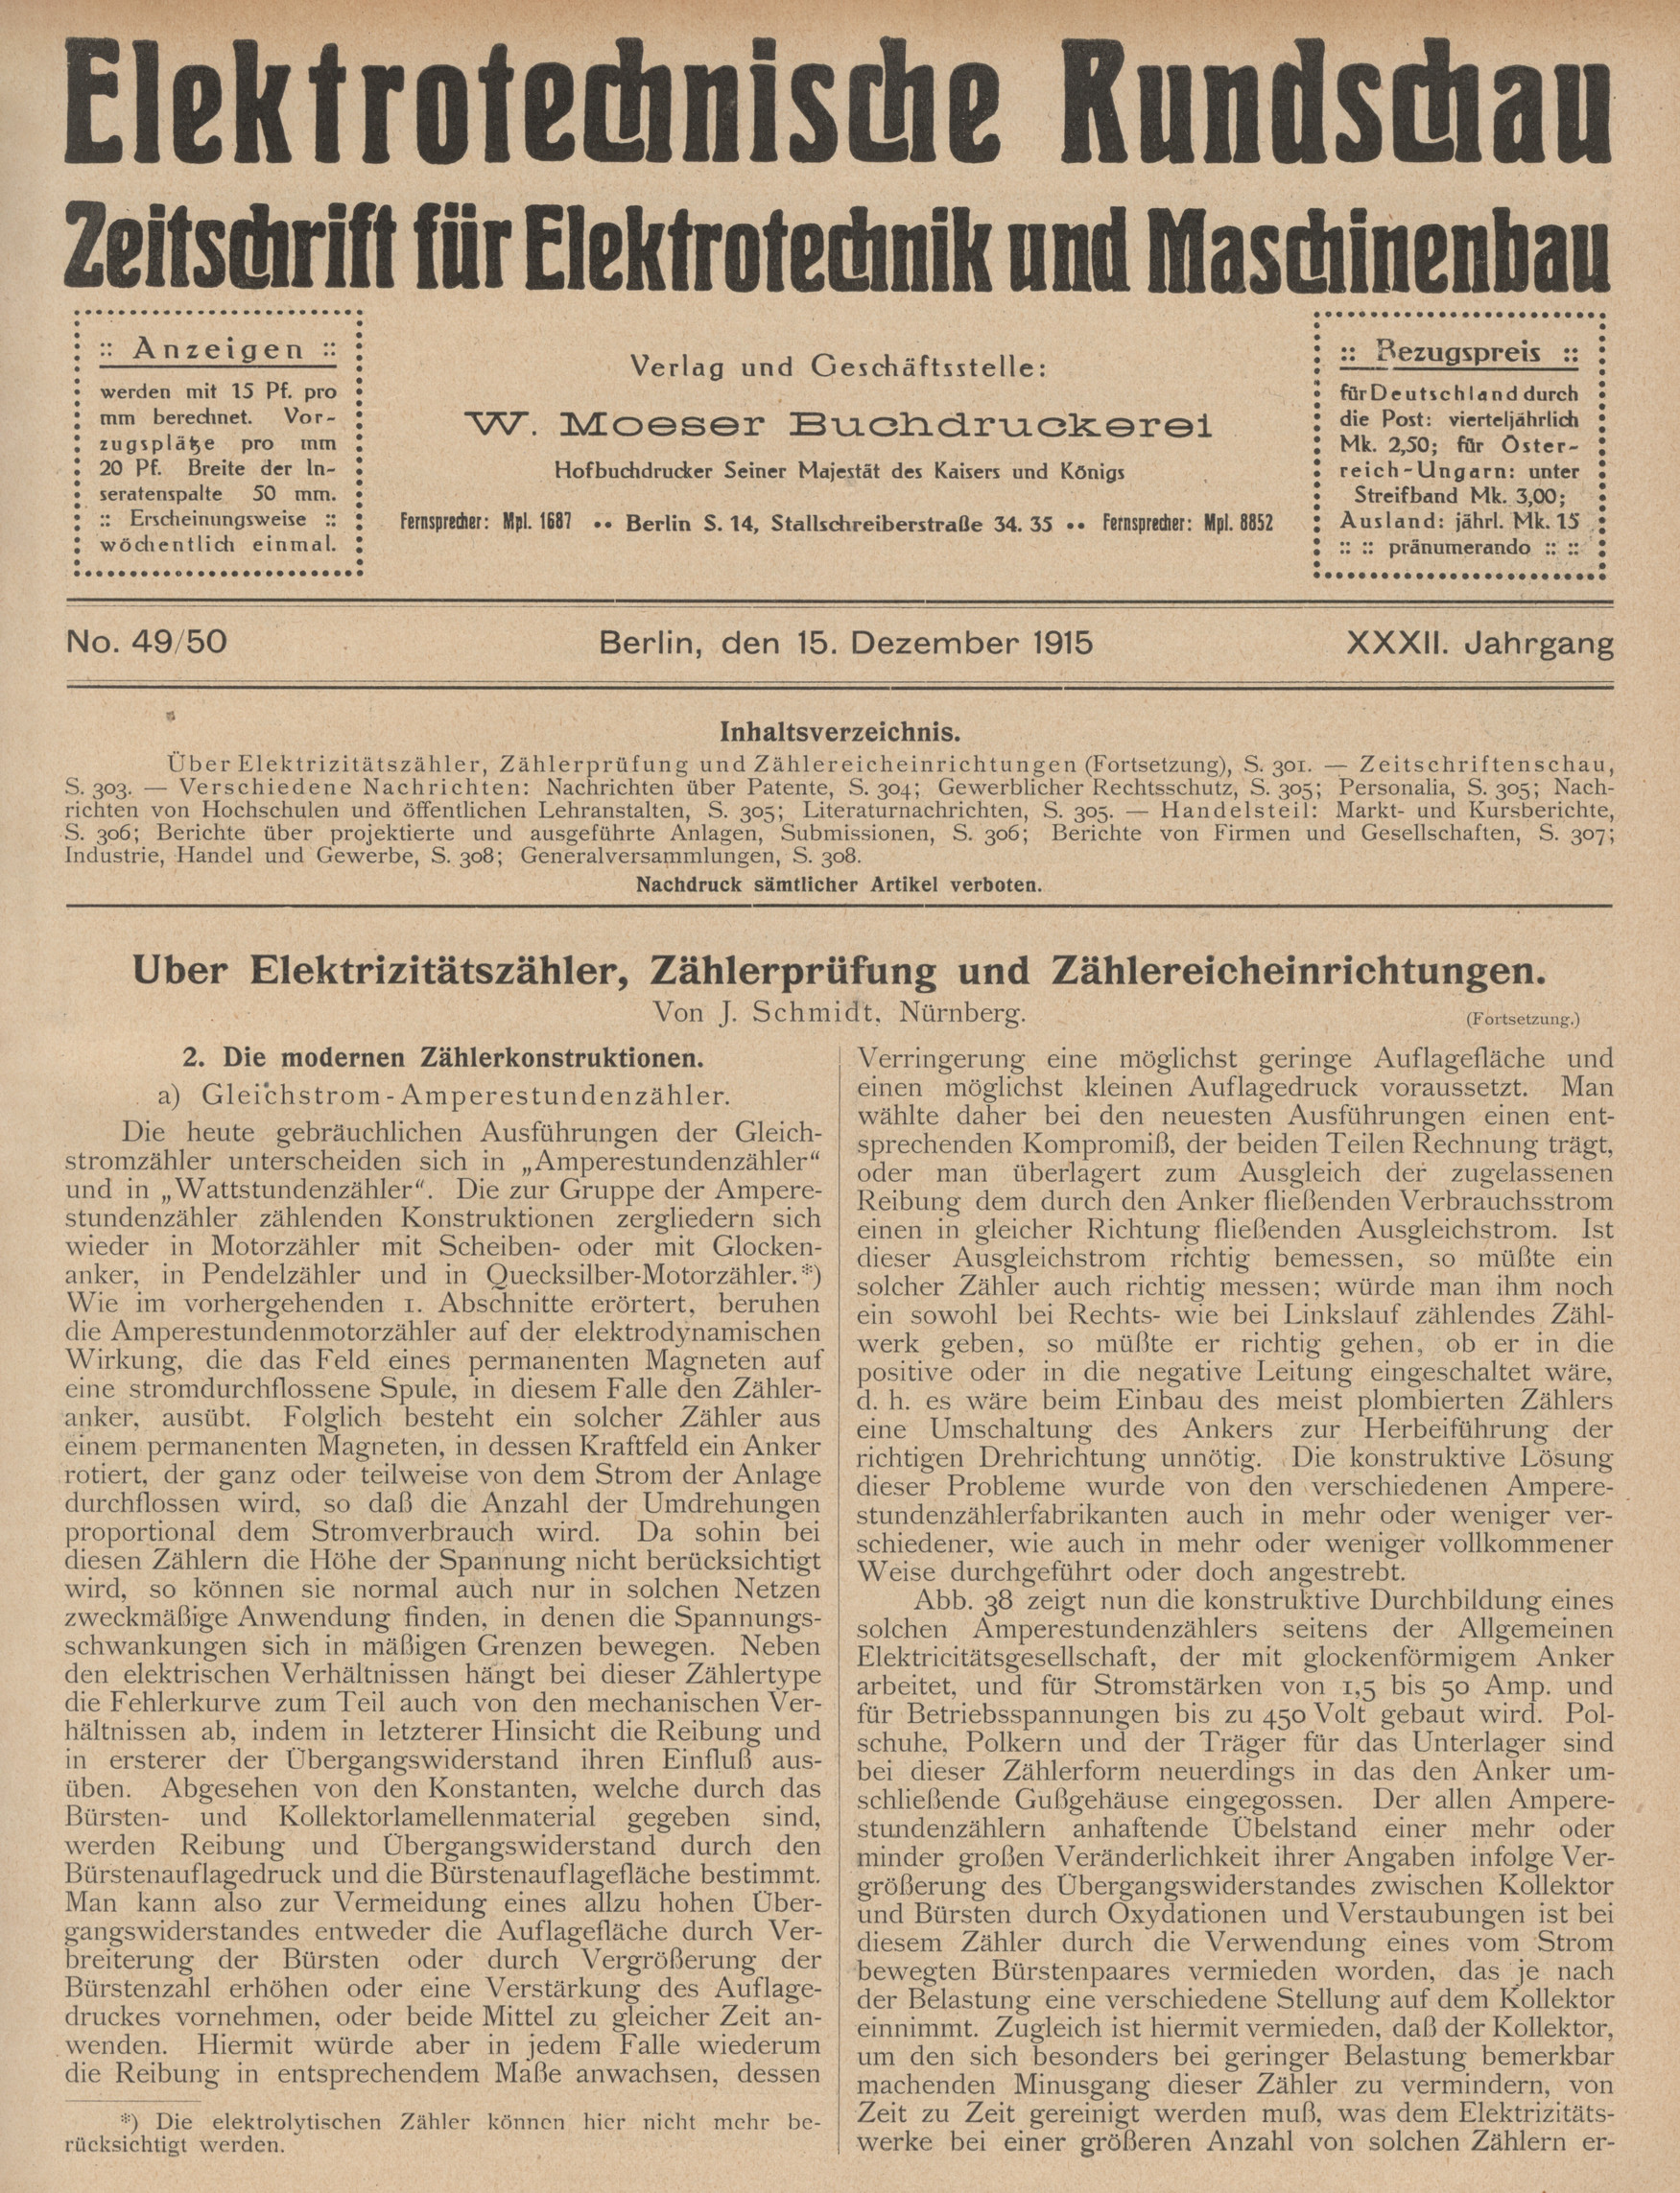 Elektrotechnische Rundschau : Zeitschrift für Elektrotechnik und Maschinenbau + Polytechnische Rundschau, No. 49/50, XXXII. Jahrgang